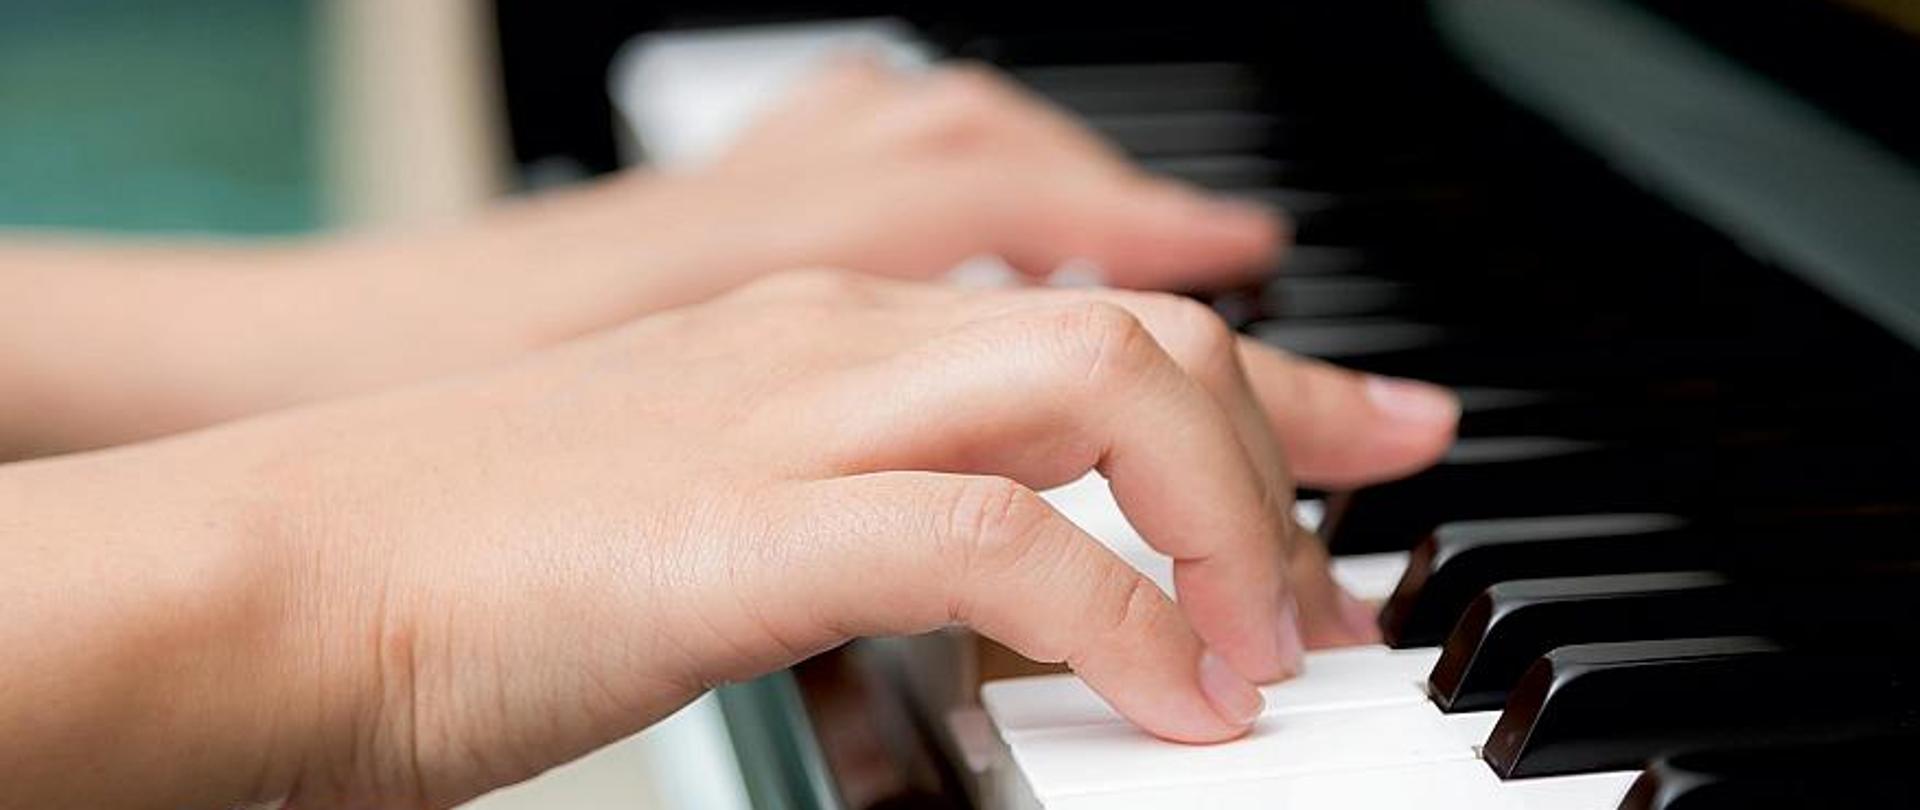 Plakat o kolorze granatowym informujący o II Szkolnym Konkursie Pianistycznym "Jak to grasz?". W części centralnej plakatu umieszczone jest zdjęcie rąk na klawiaturze fortepianu.